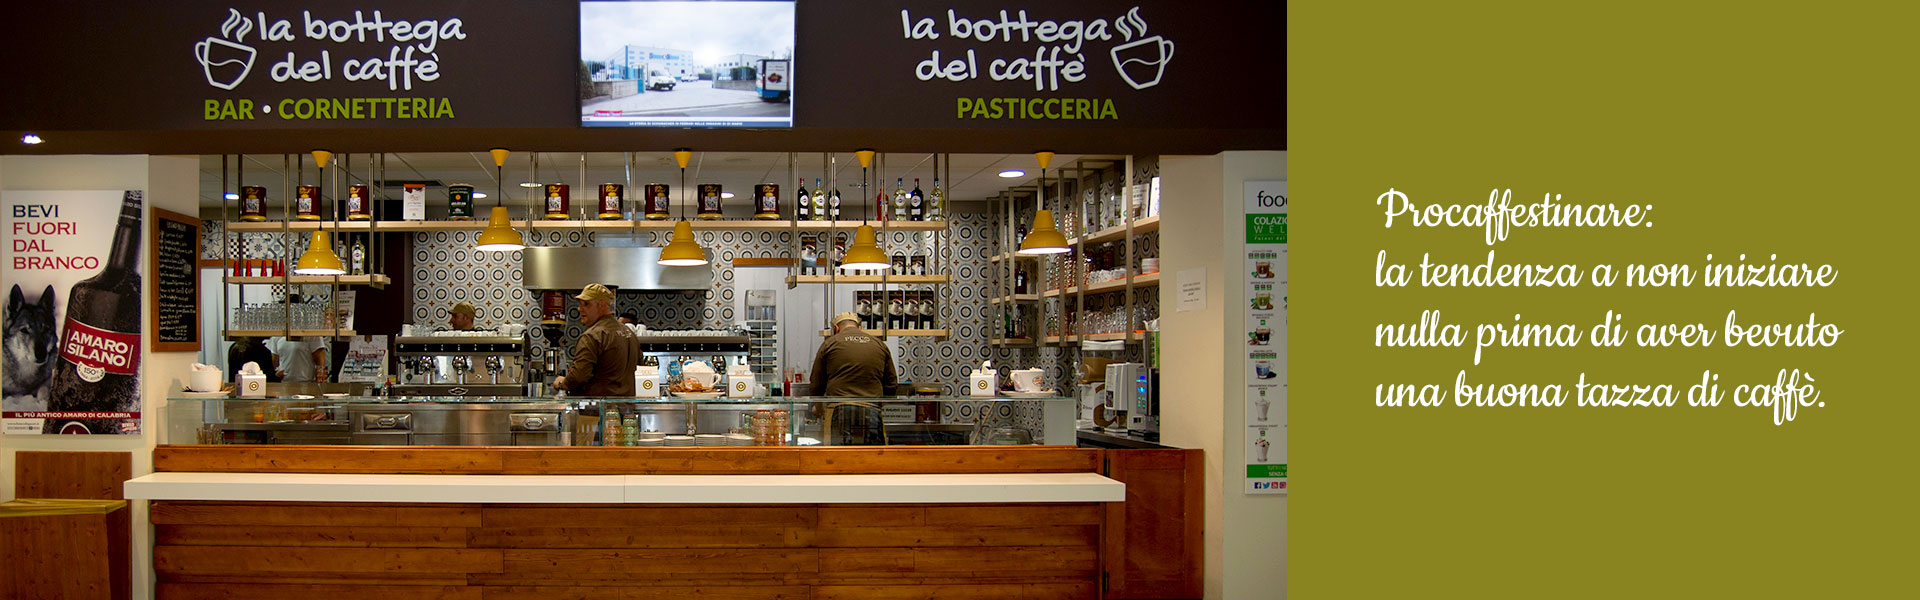 Banner Bottega del Caffè PECCO Calabria